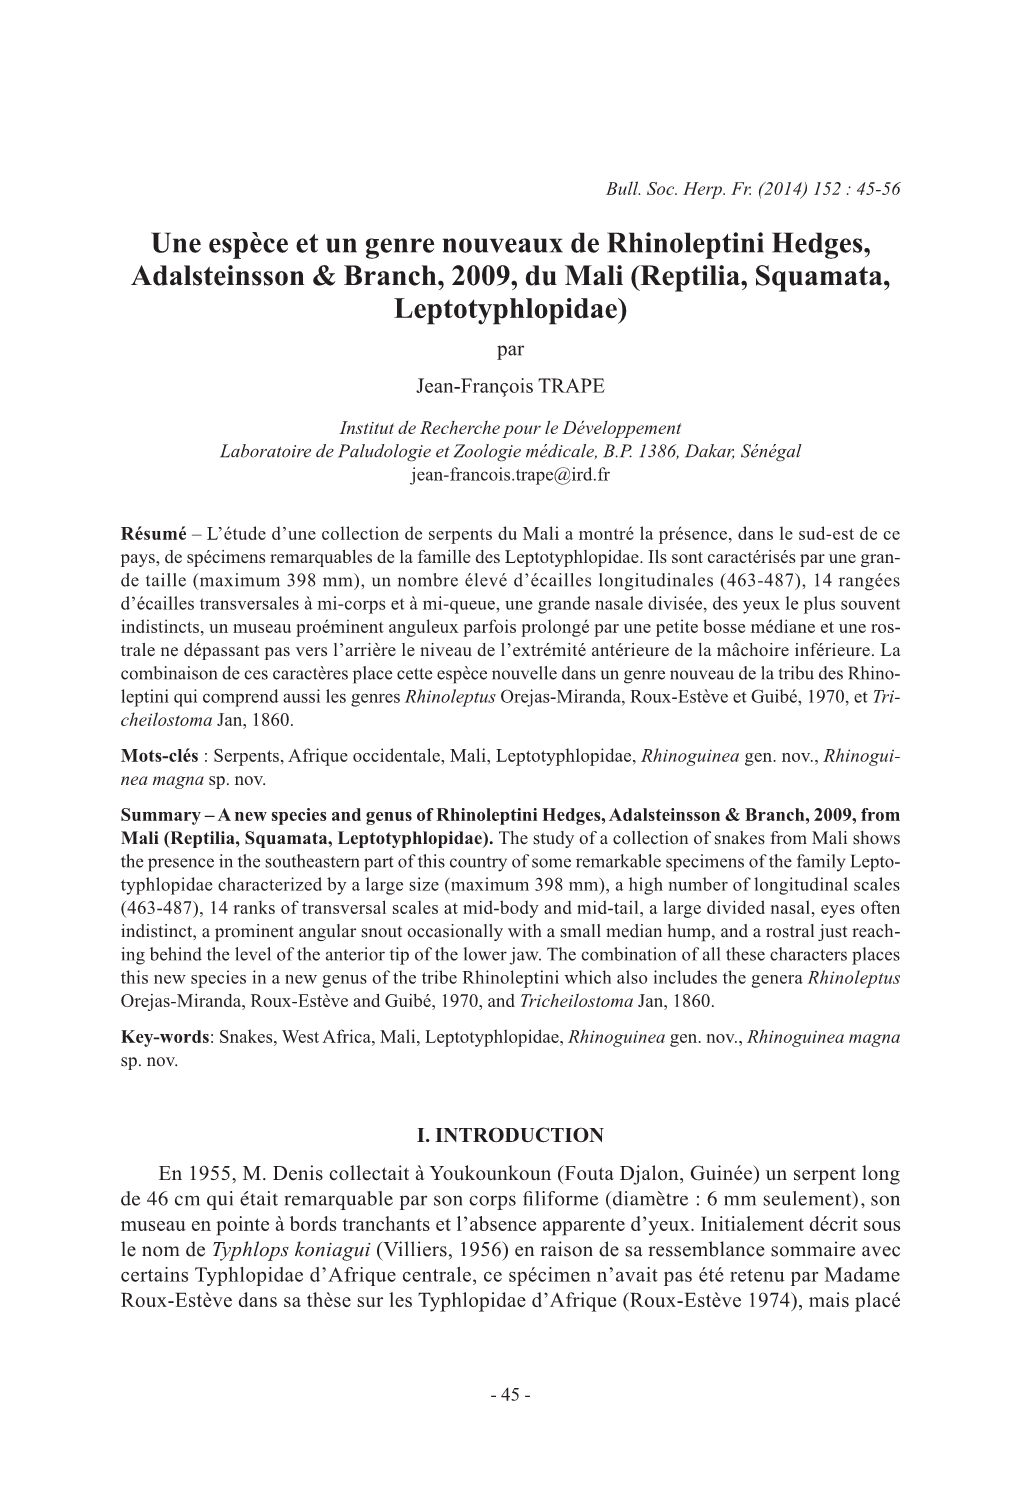 Une Espèce Et Un Genre Nouveaux De Rhinoleptini Hedges, Adalsteinsson & Branch, 2009, Du Mali (Reptilia, Squamata, Leptotyp